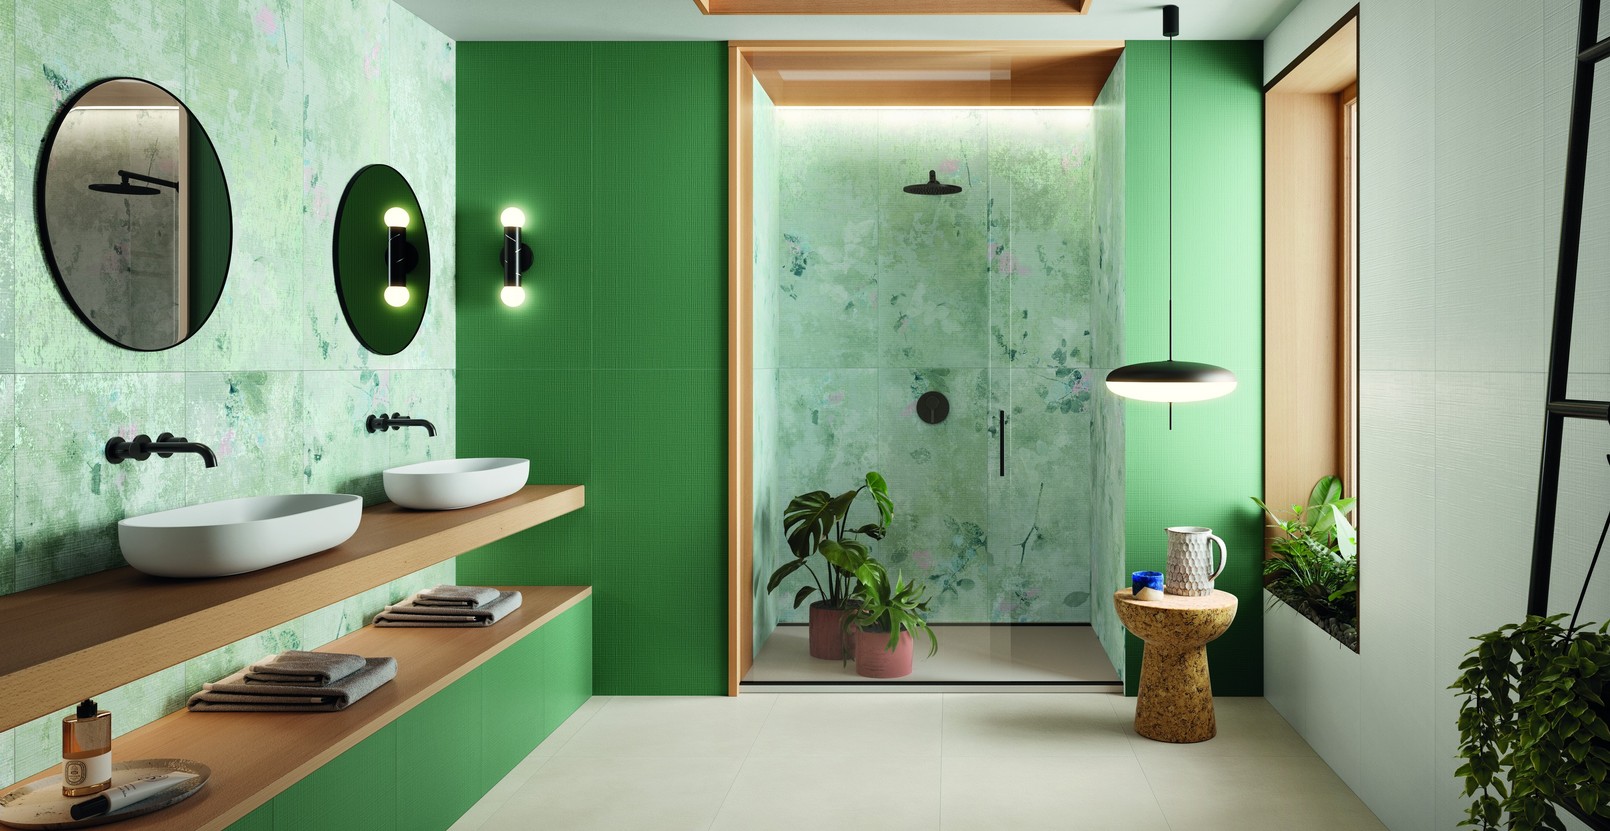 Pokojovky v koupelně – zelená oáza opravdové pohody a vytříbeného stylu